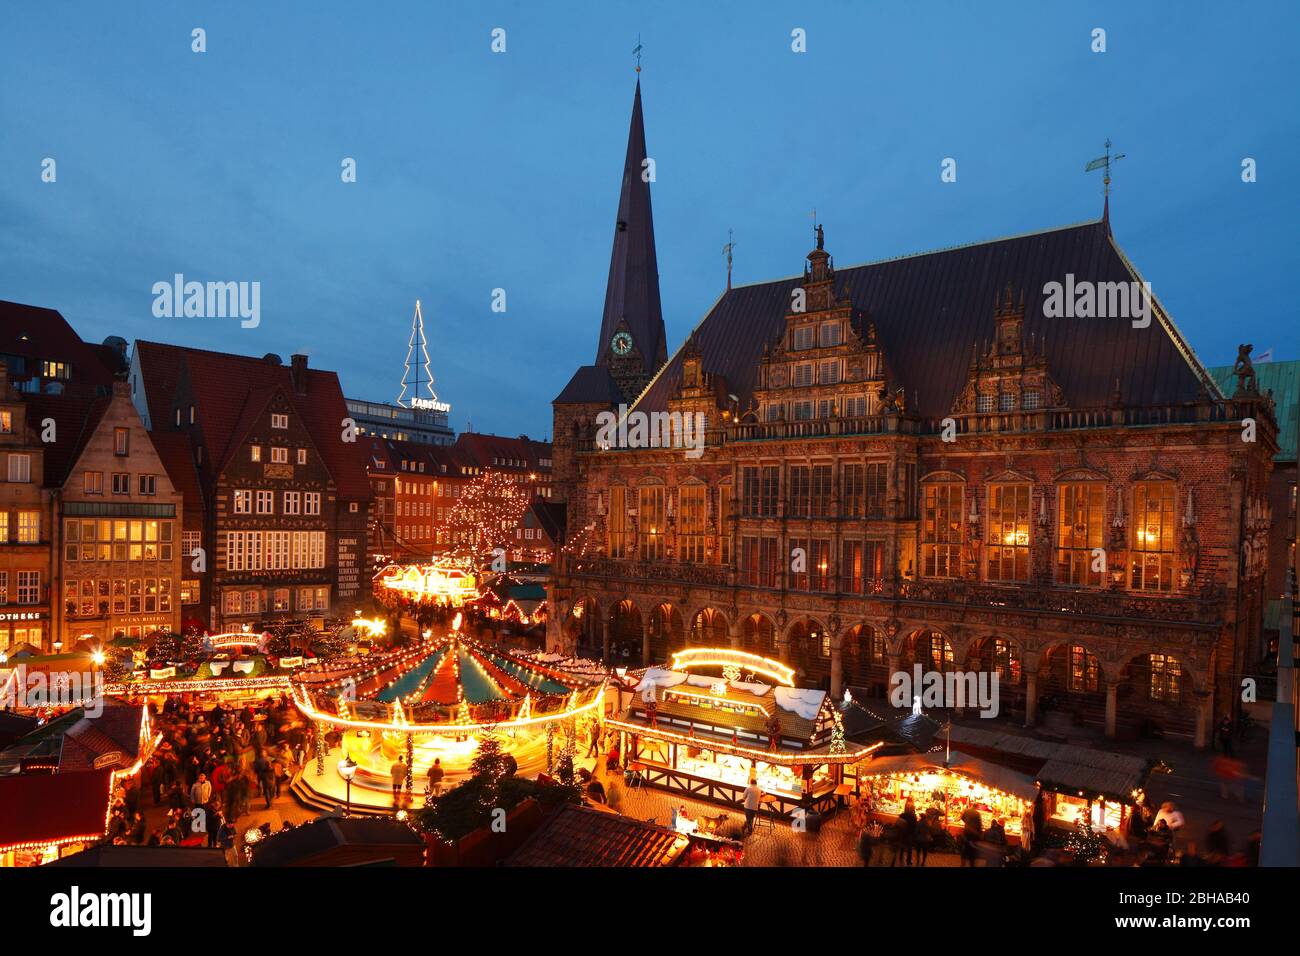 Weihnachtsmarkt mit Marktplatz-Westseite, Liebfrauenkirche und Rathaus, bei Abenddämmerung, Bremen, Deutschland, Europa Stock Photo